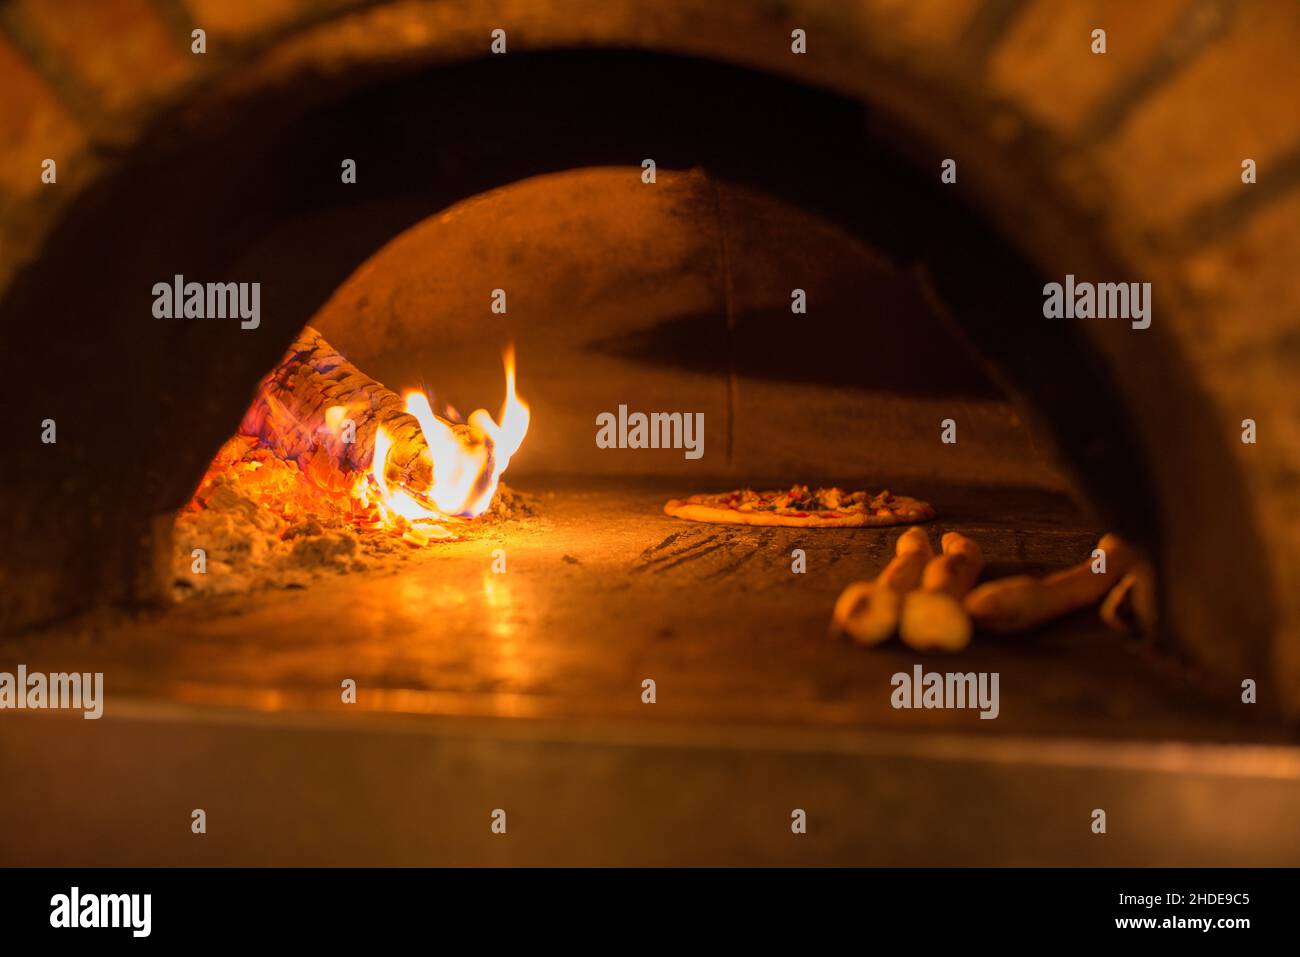 Eine Pizza und ein Pizzabrot werden in einem Pizzaofen gebacken, der mit glühendem und brennendem Holz befeuert wird. Stockfoto